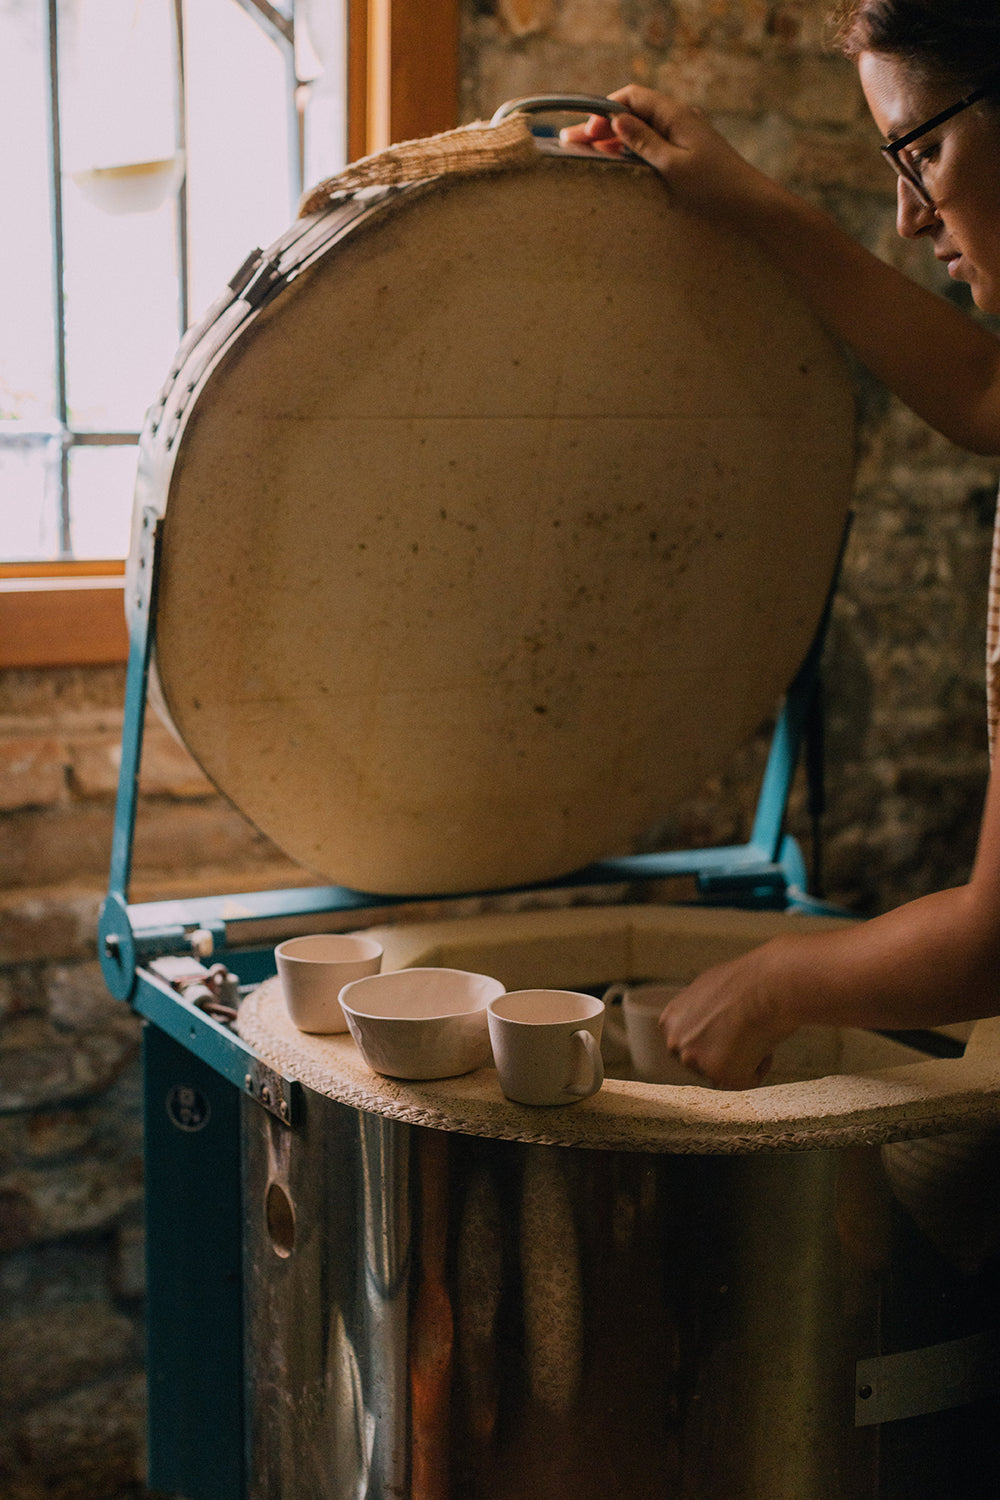 Esperienza ceramica a Venezia- workshop crea la tua tazza per la colazione - laurapottery.it